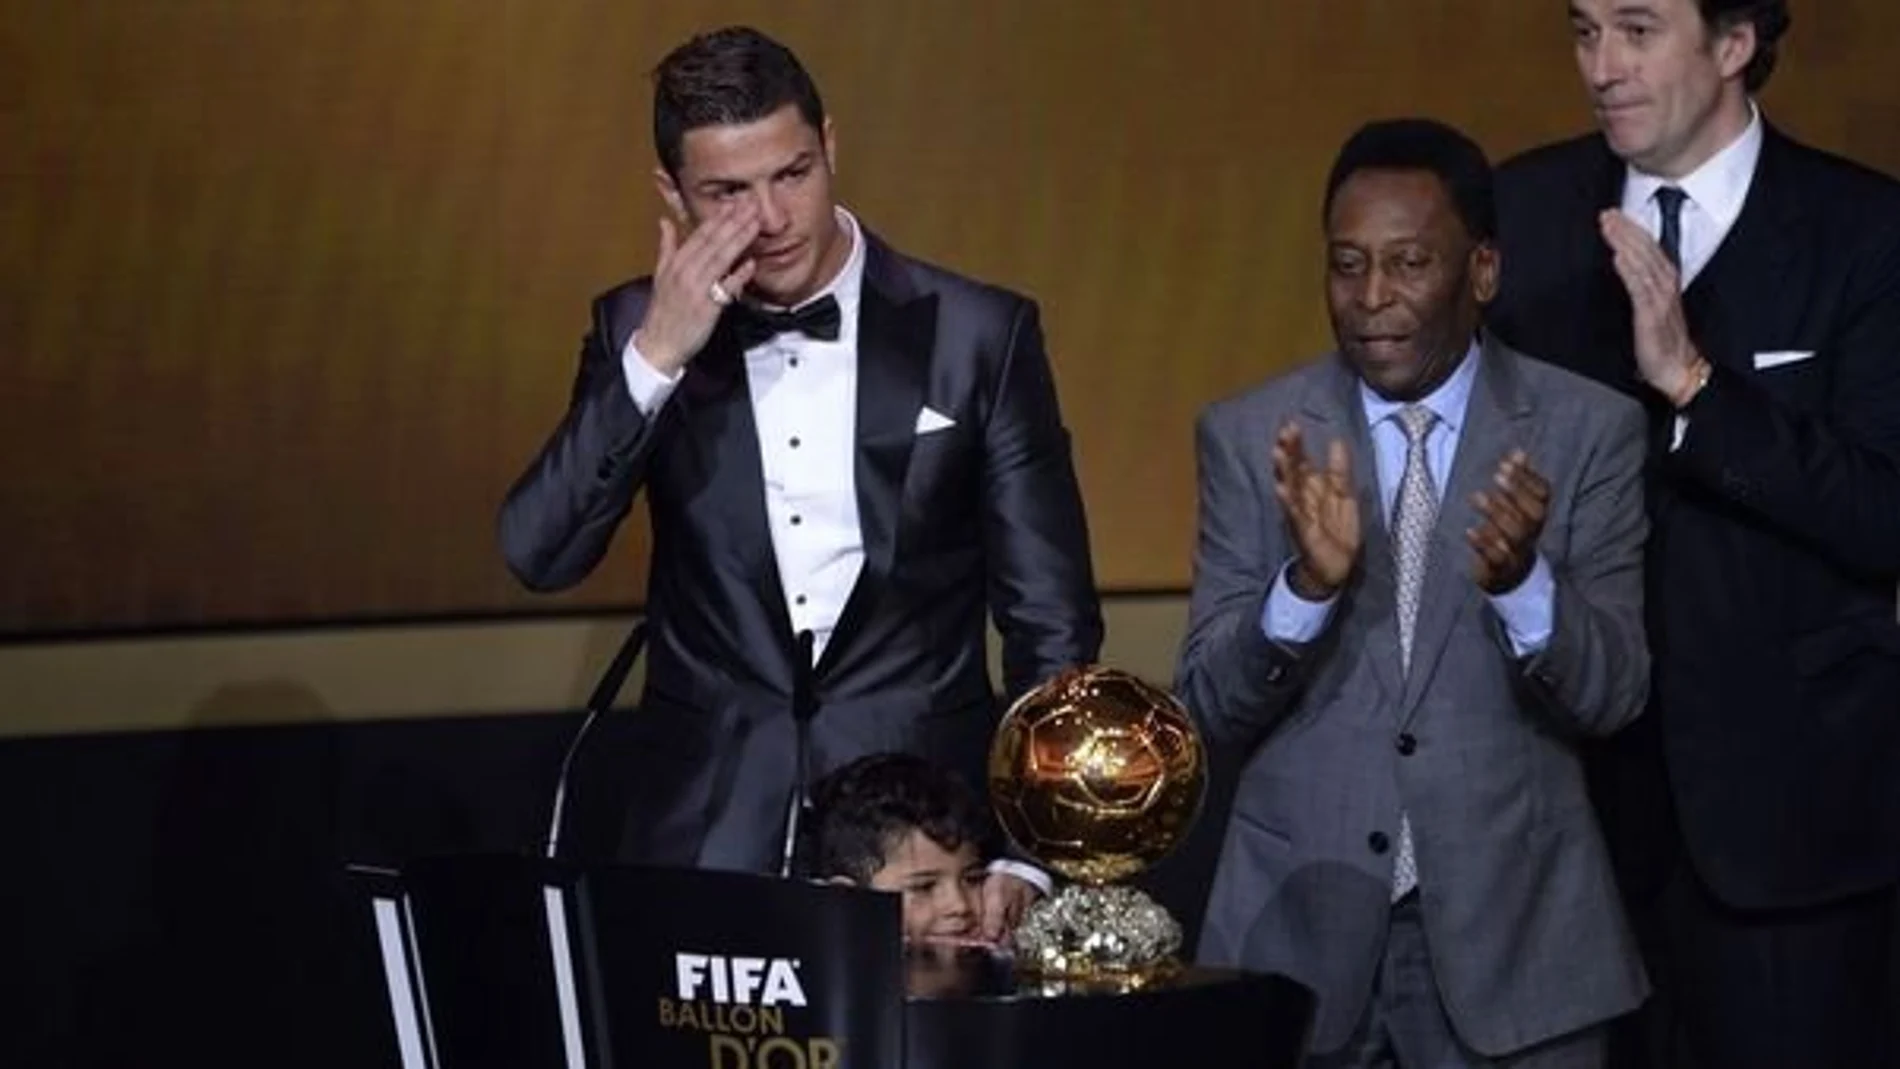 Cristiano Ronaldo recogió el Balón de oro la pasada edición visiblemente emocionado